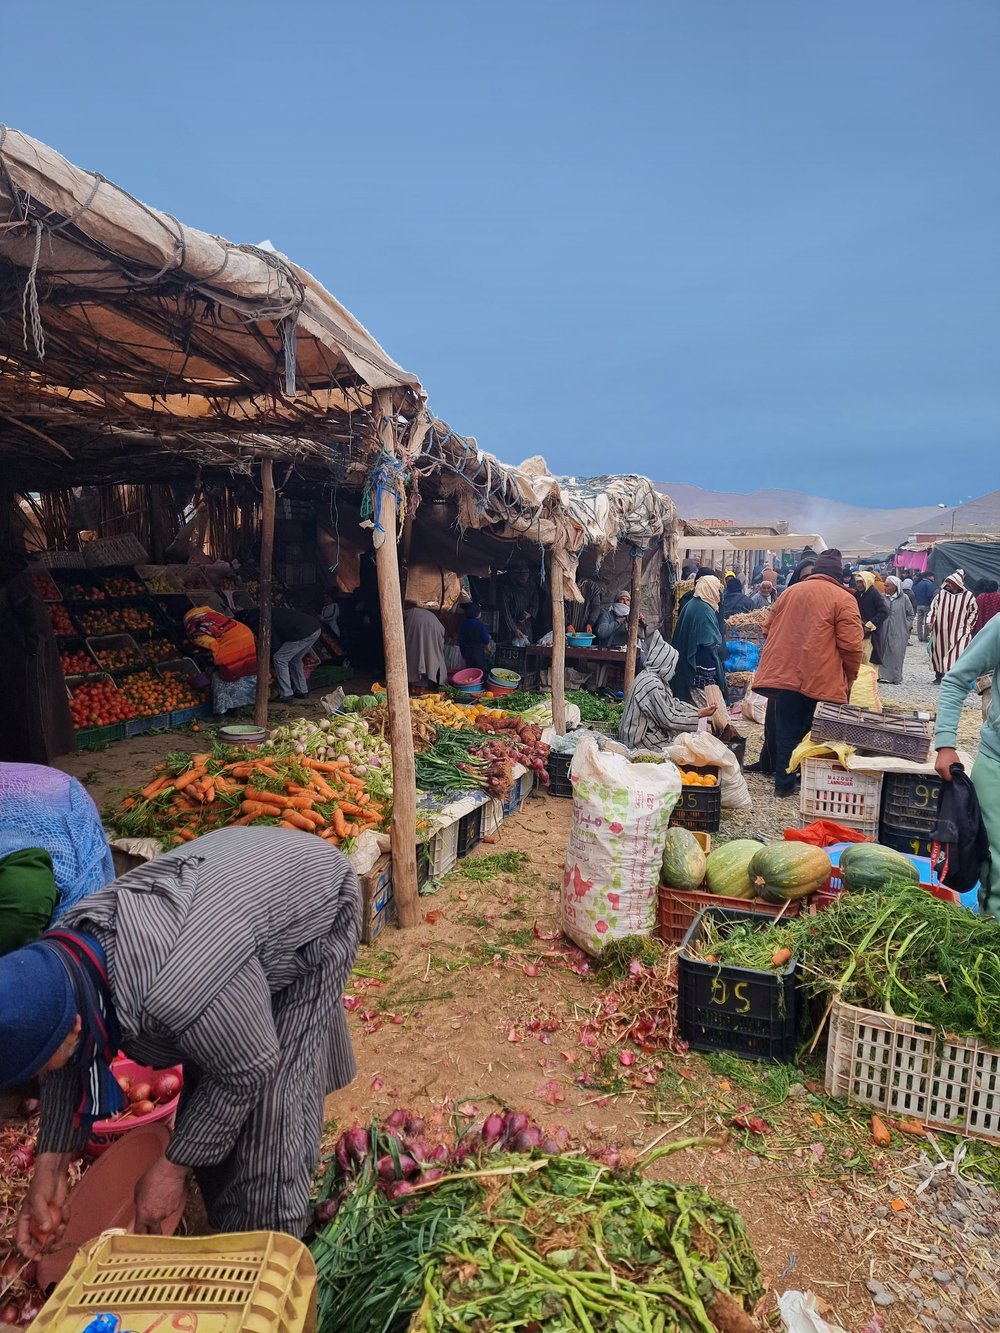 Msemrir-Souk-Morocco-fruit-and-vegetables-for-sale.jpg